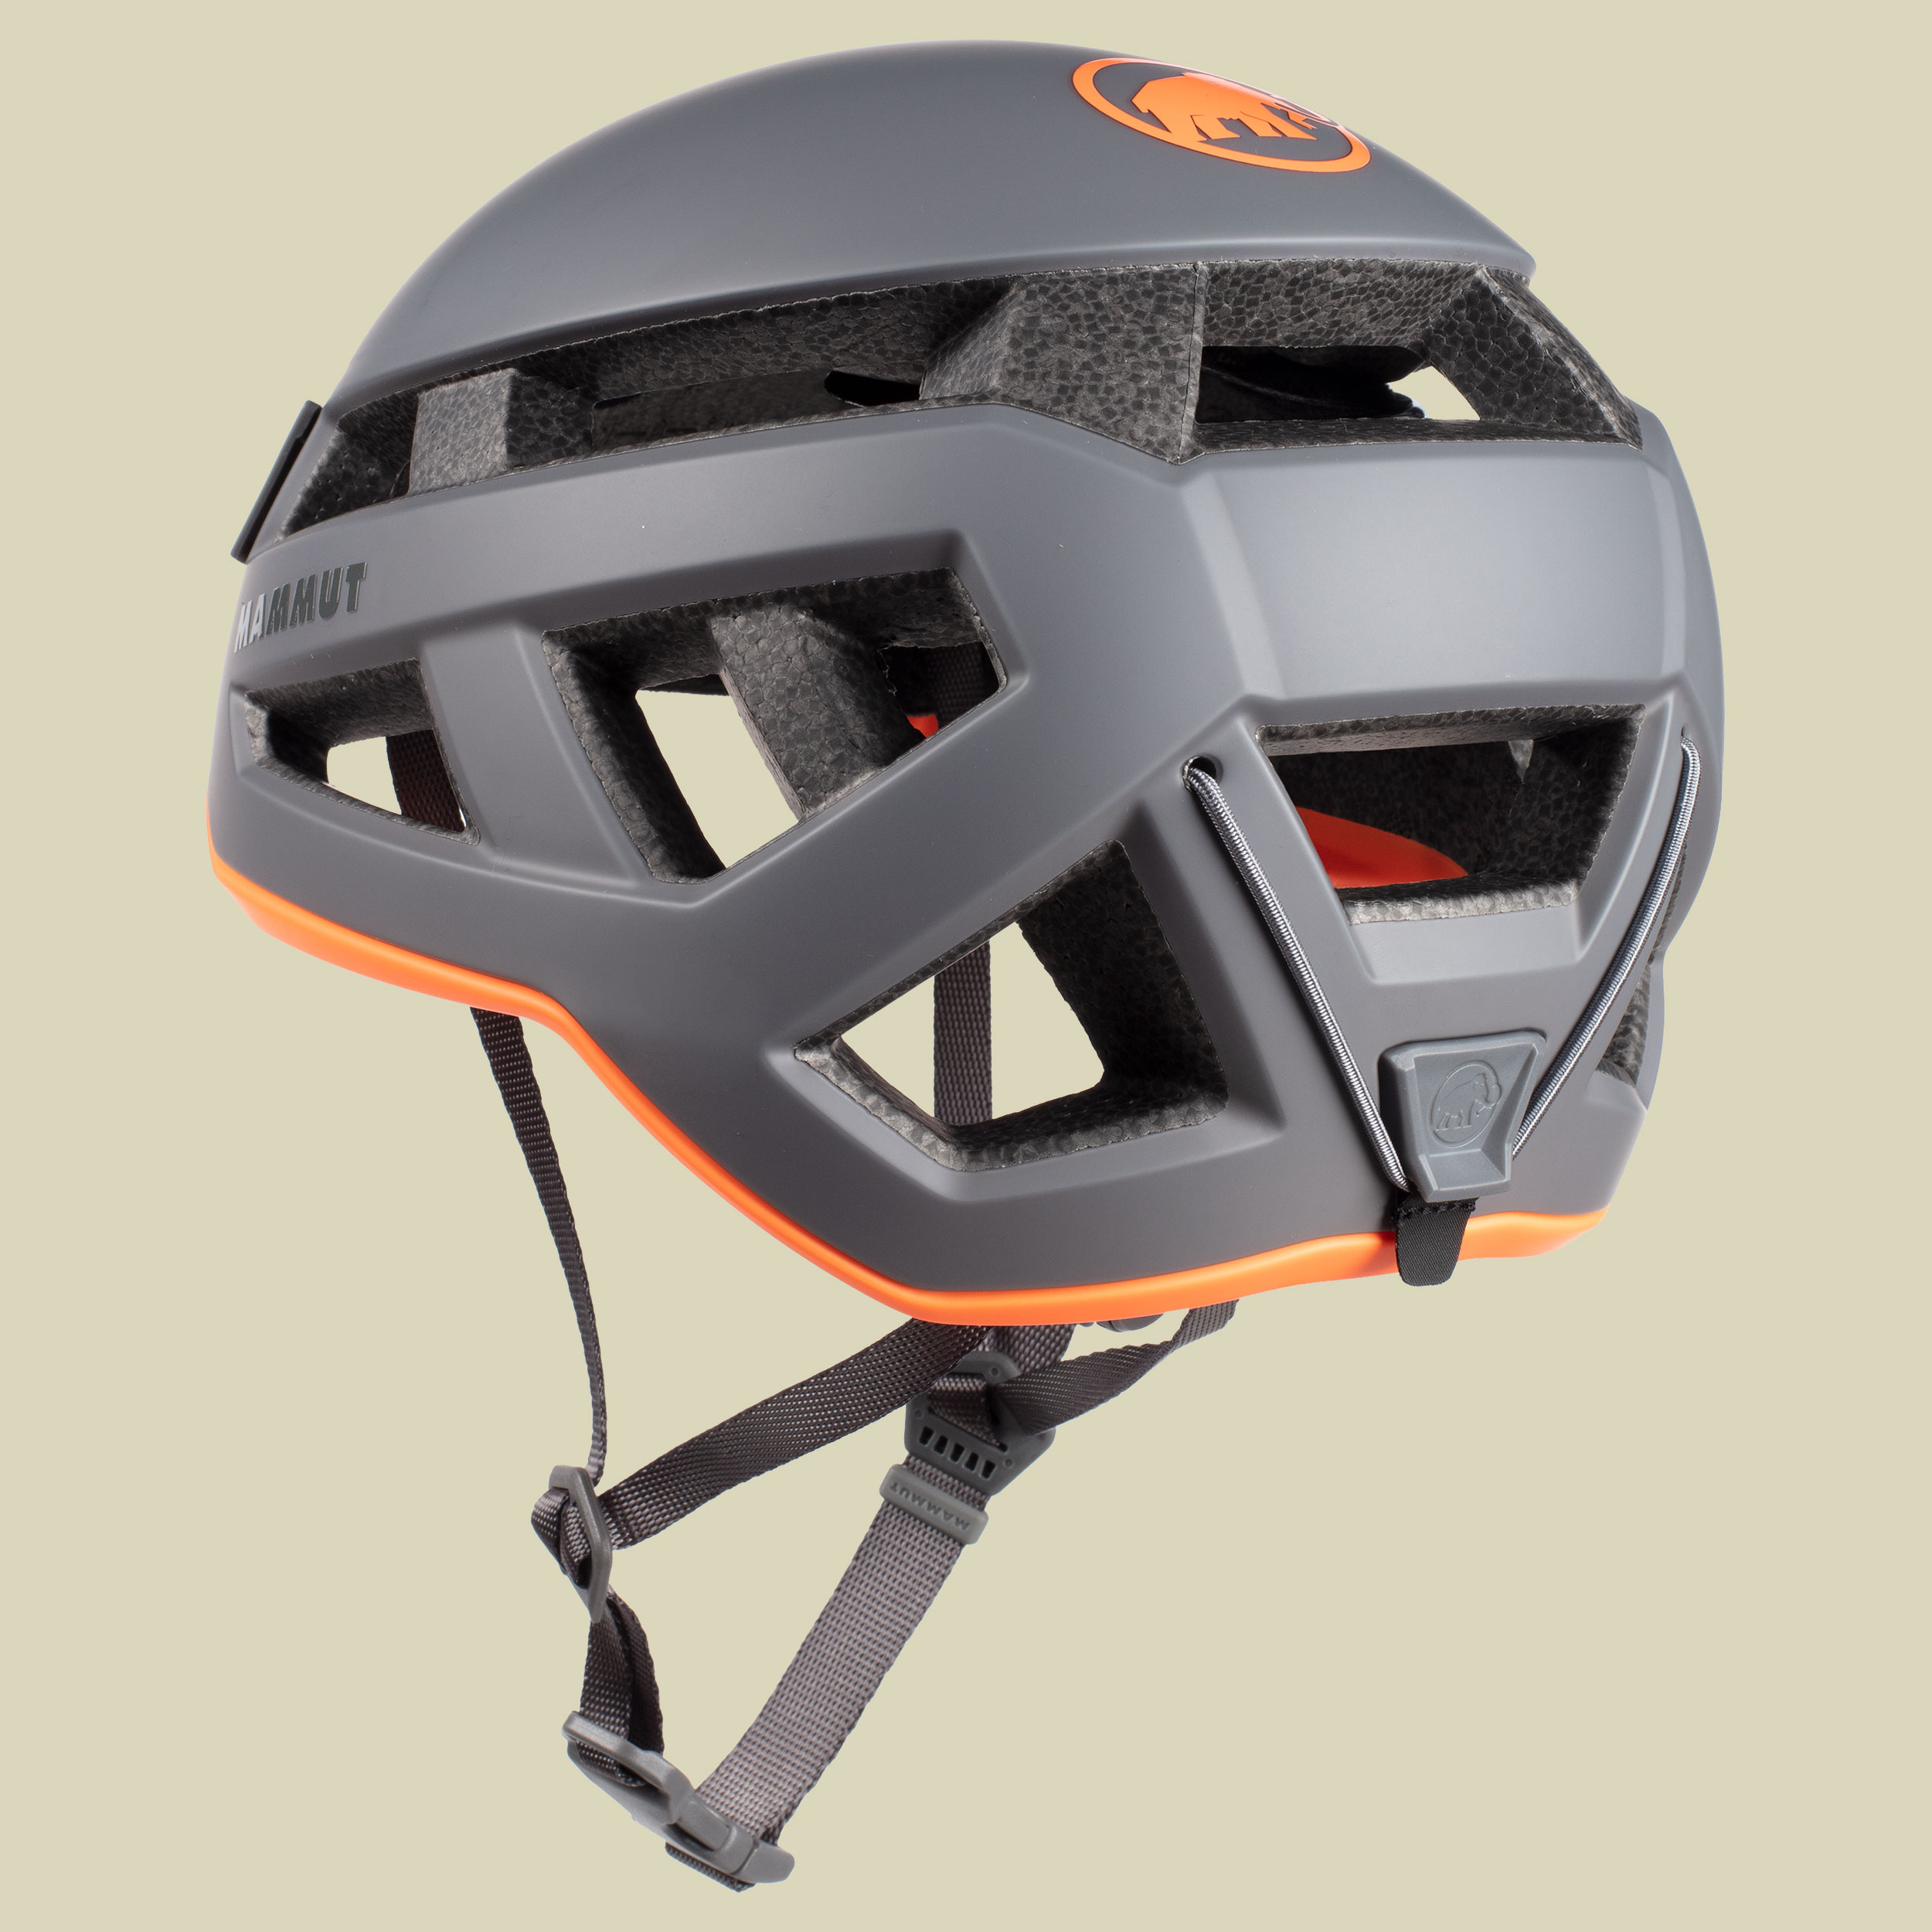 Crag Sender Helmet Größe 52-57 cm Farbe titanium